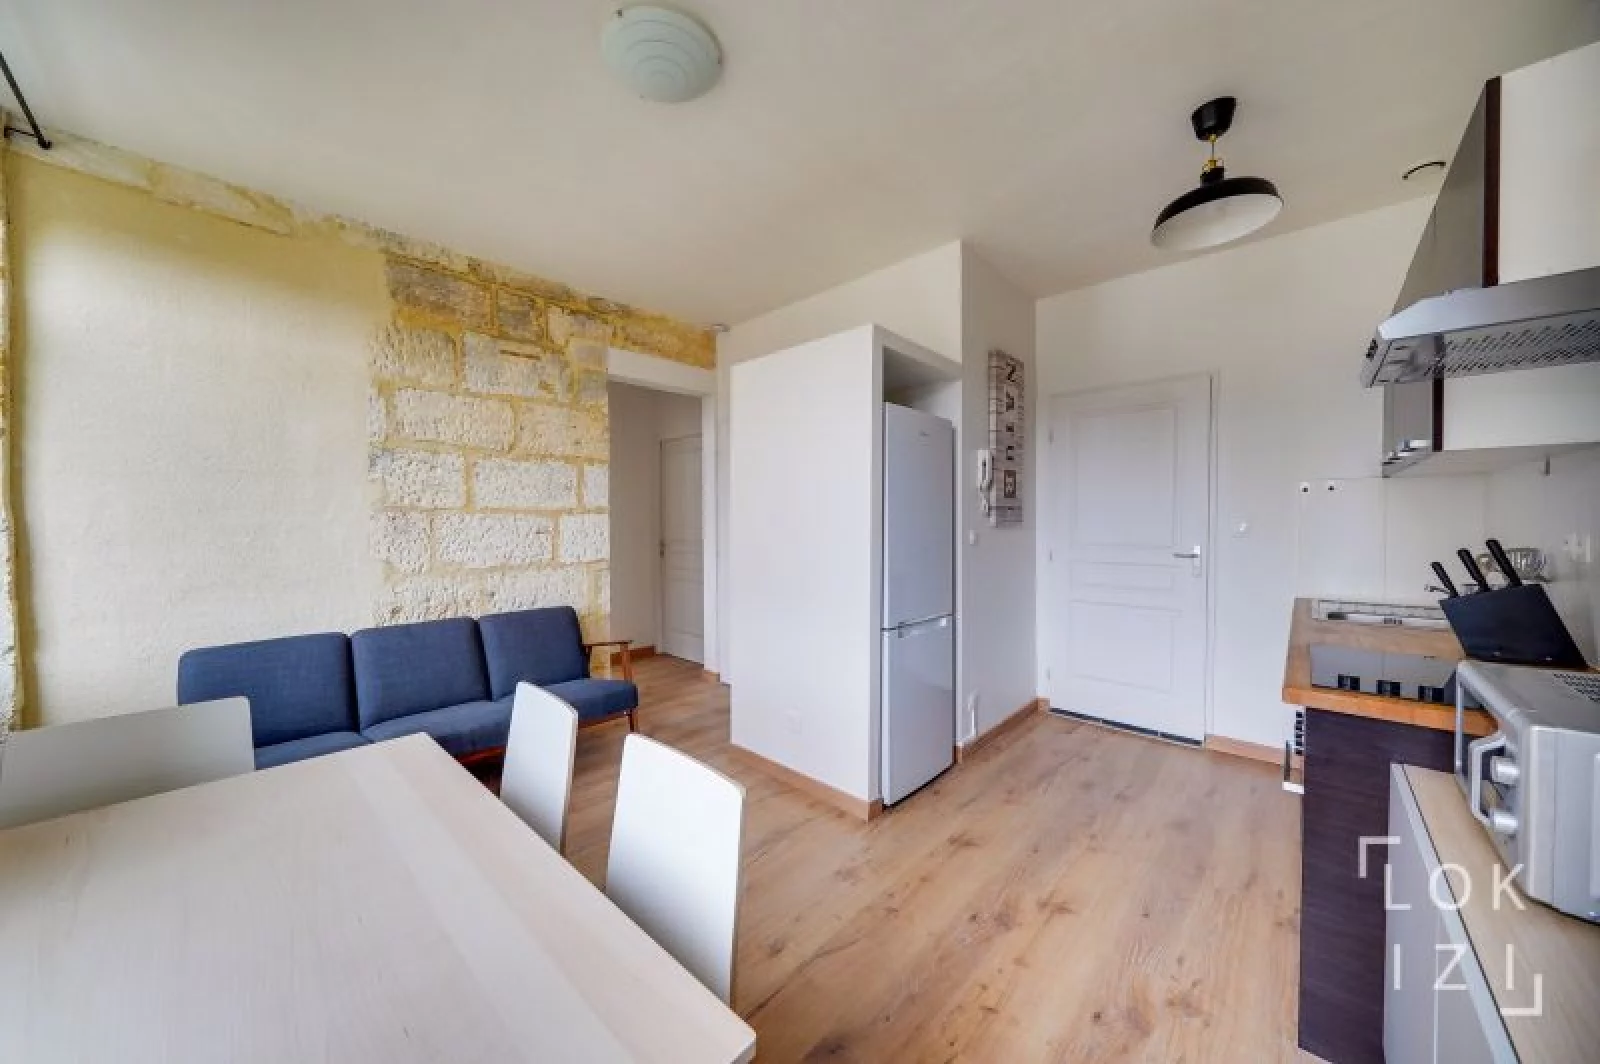 Location appartement meublé 3 pièces 42m² (Bordeaux - Chartrons)